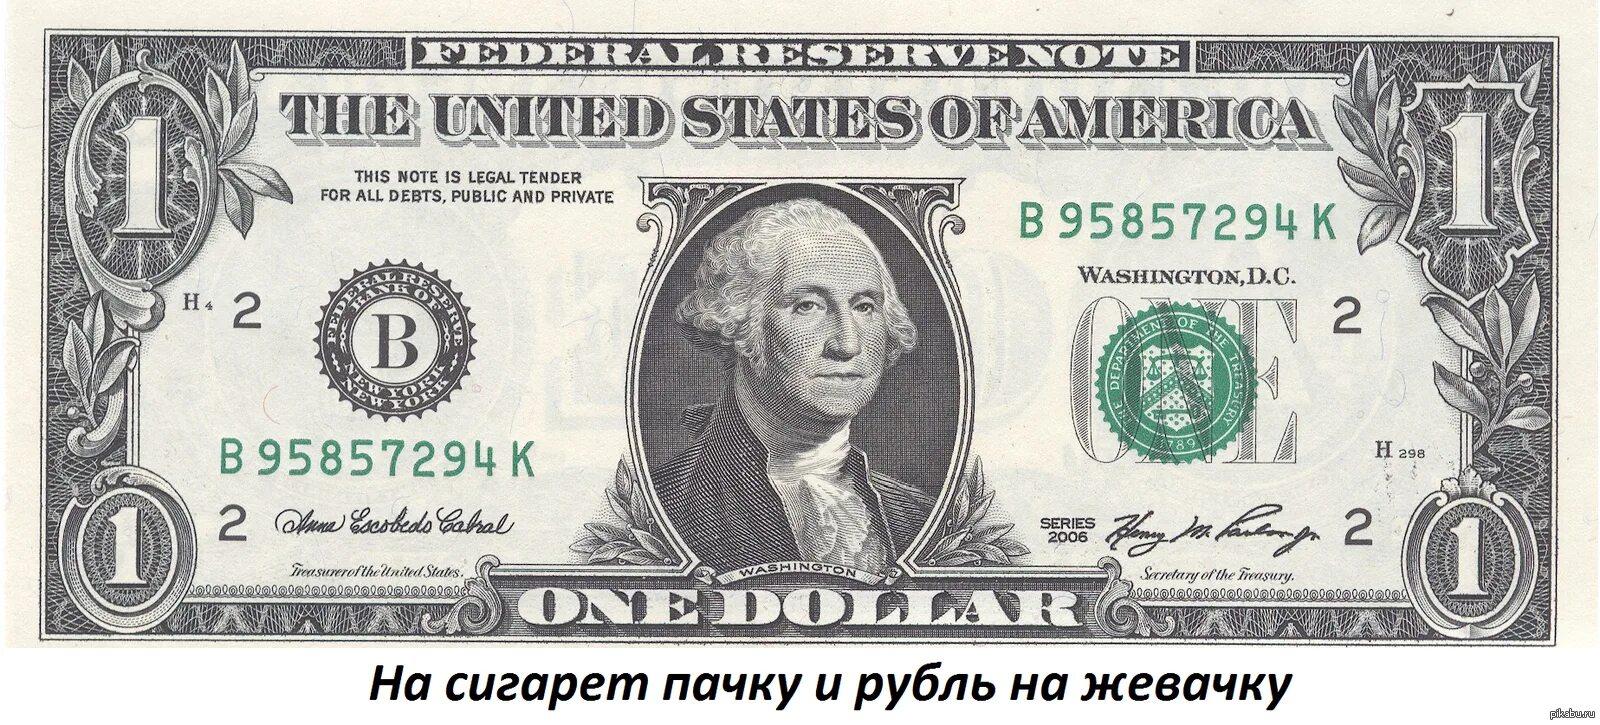 Однодолларовая купюра Джордж Вашингтон. Джордж Вашингтон на купюре. 1 Доллар США. Купюра 50 долларов США. Купюра 8 букв